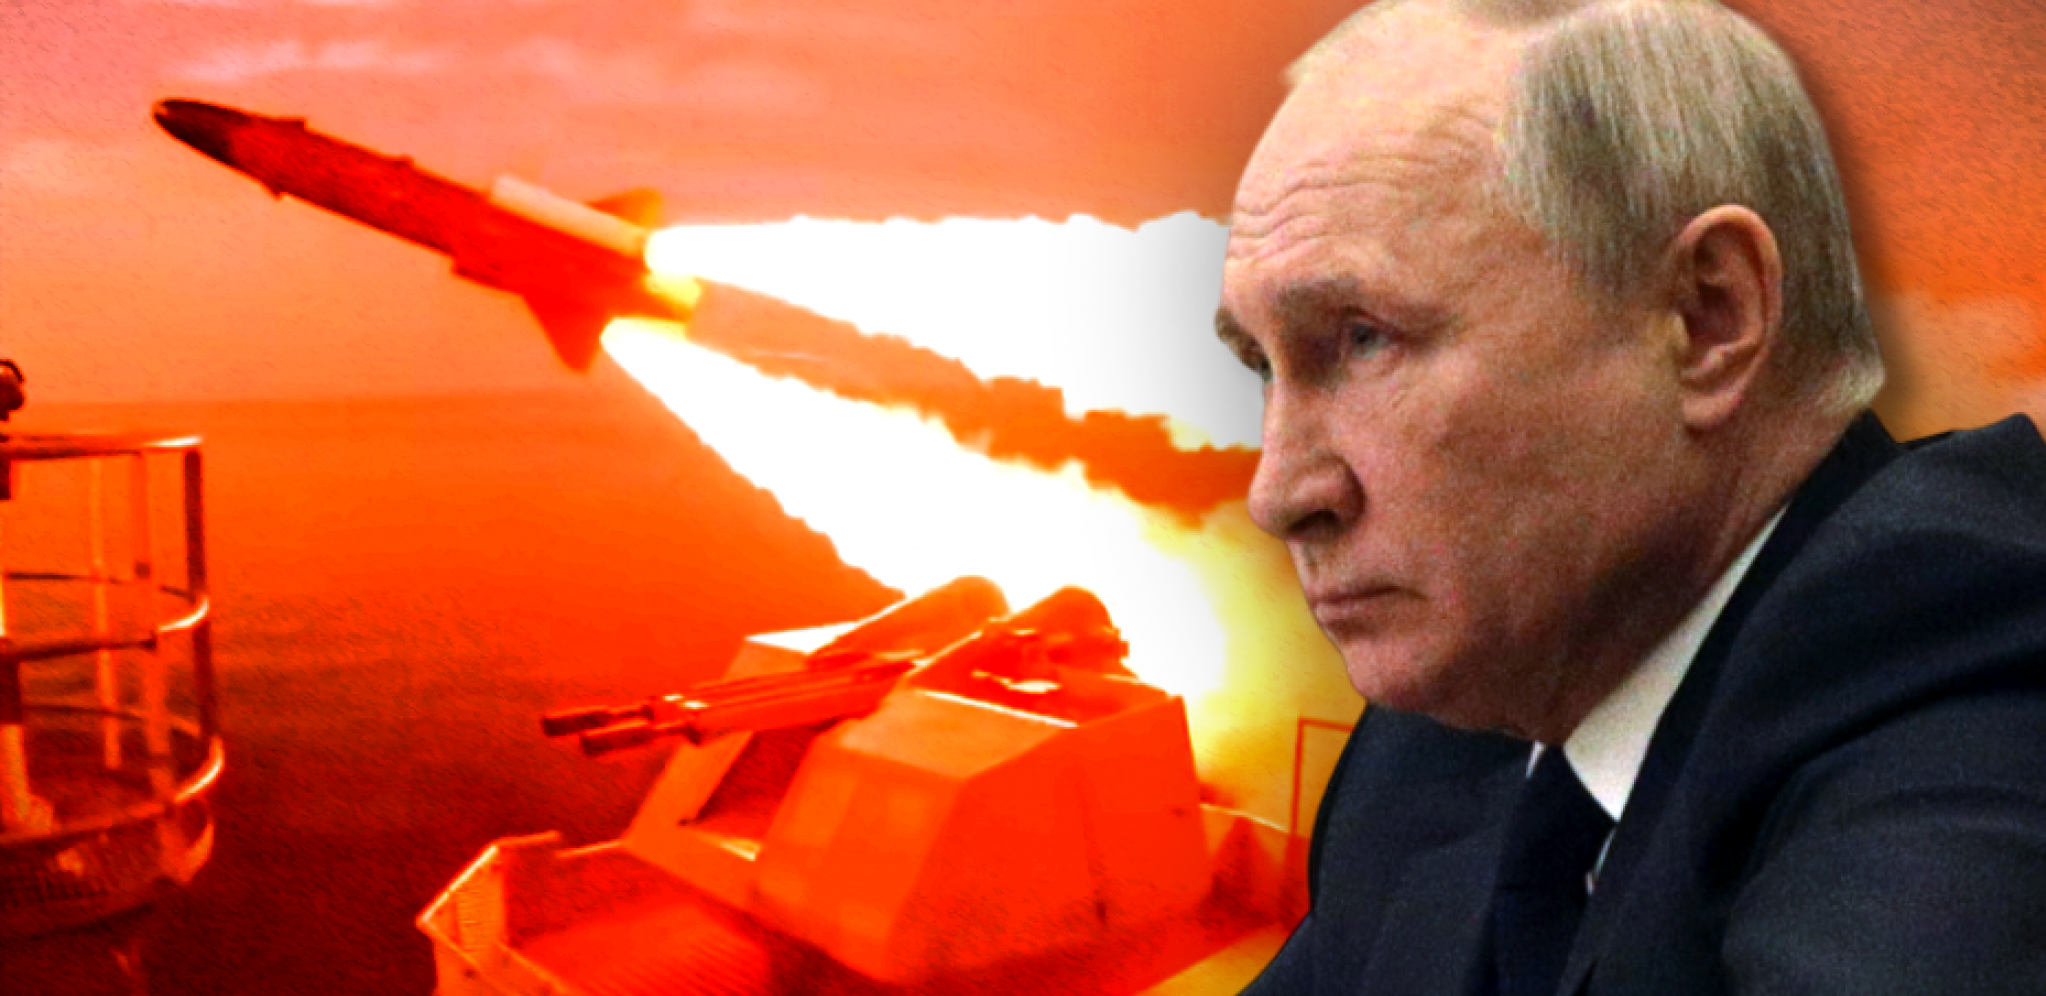 "AKO STVORE "NATO JEZERO", PUTIN BI MOGAO DA POKRENE NUKLEARNI RAT!" Jezivo upozorenjenje ruskog pukovnika